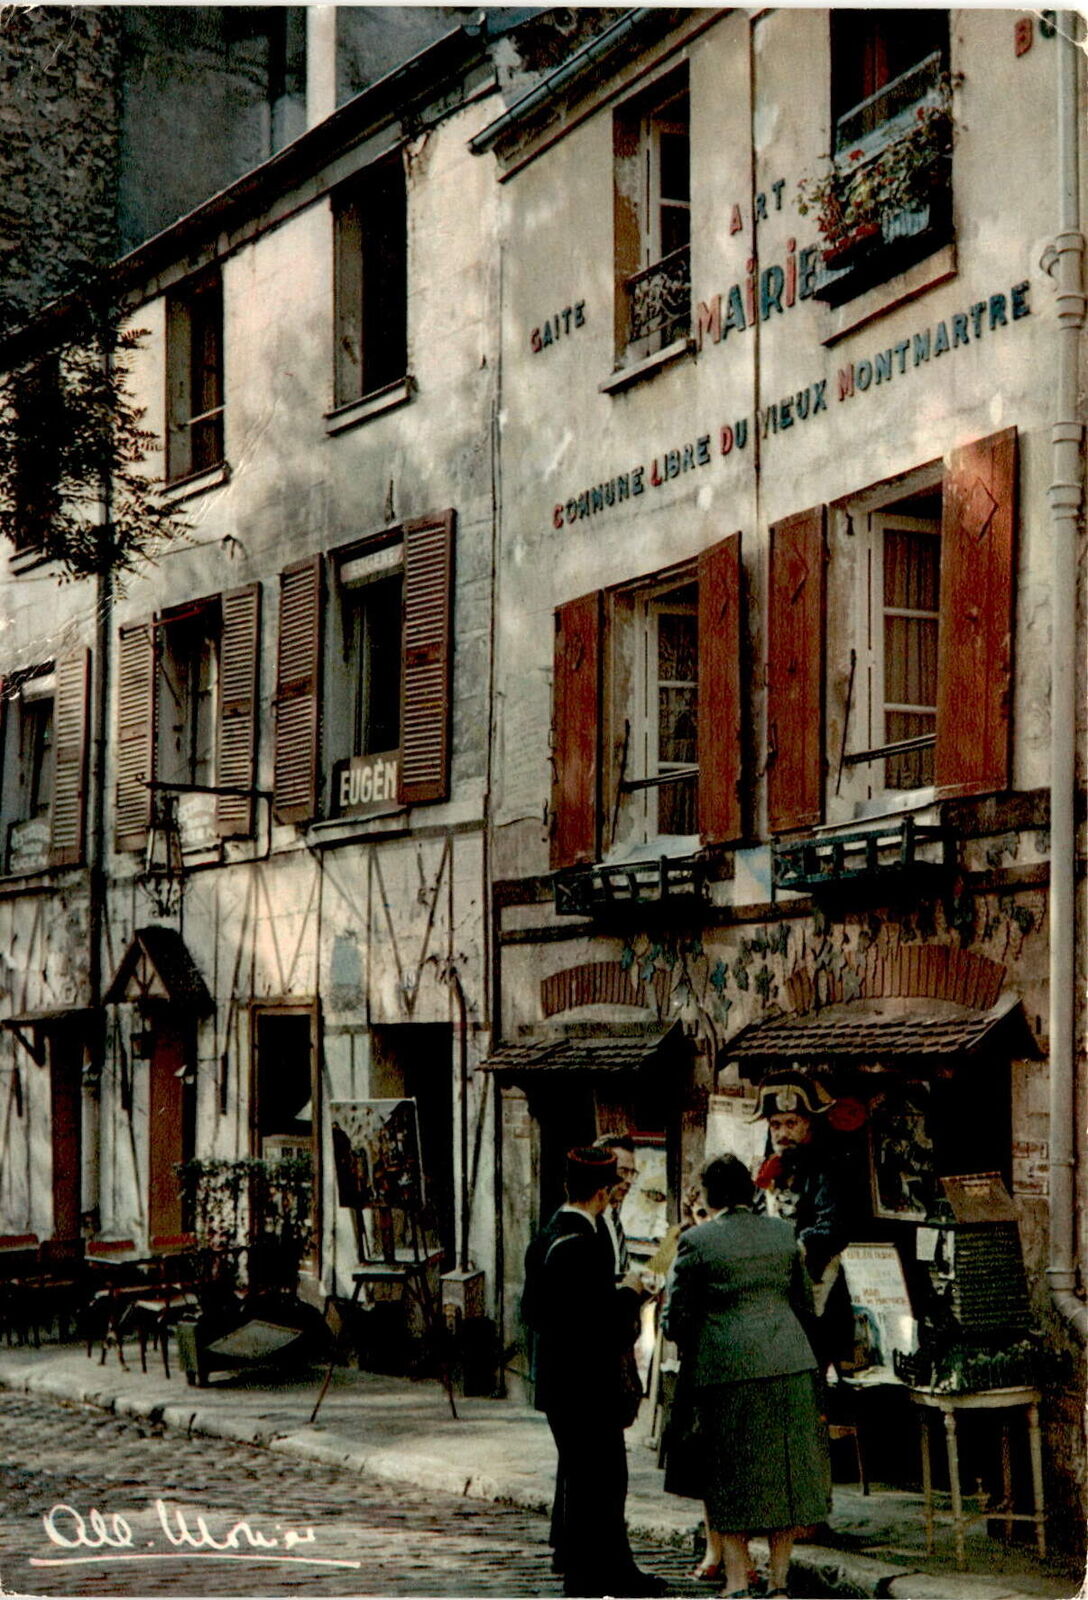 Paris, France, Commune Libre du Vieux Montmartre, Place du Tertre,  Postcard